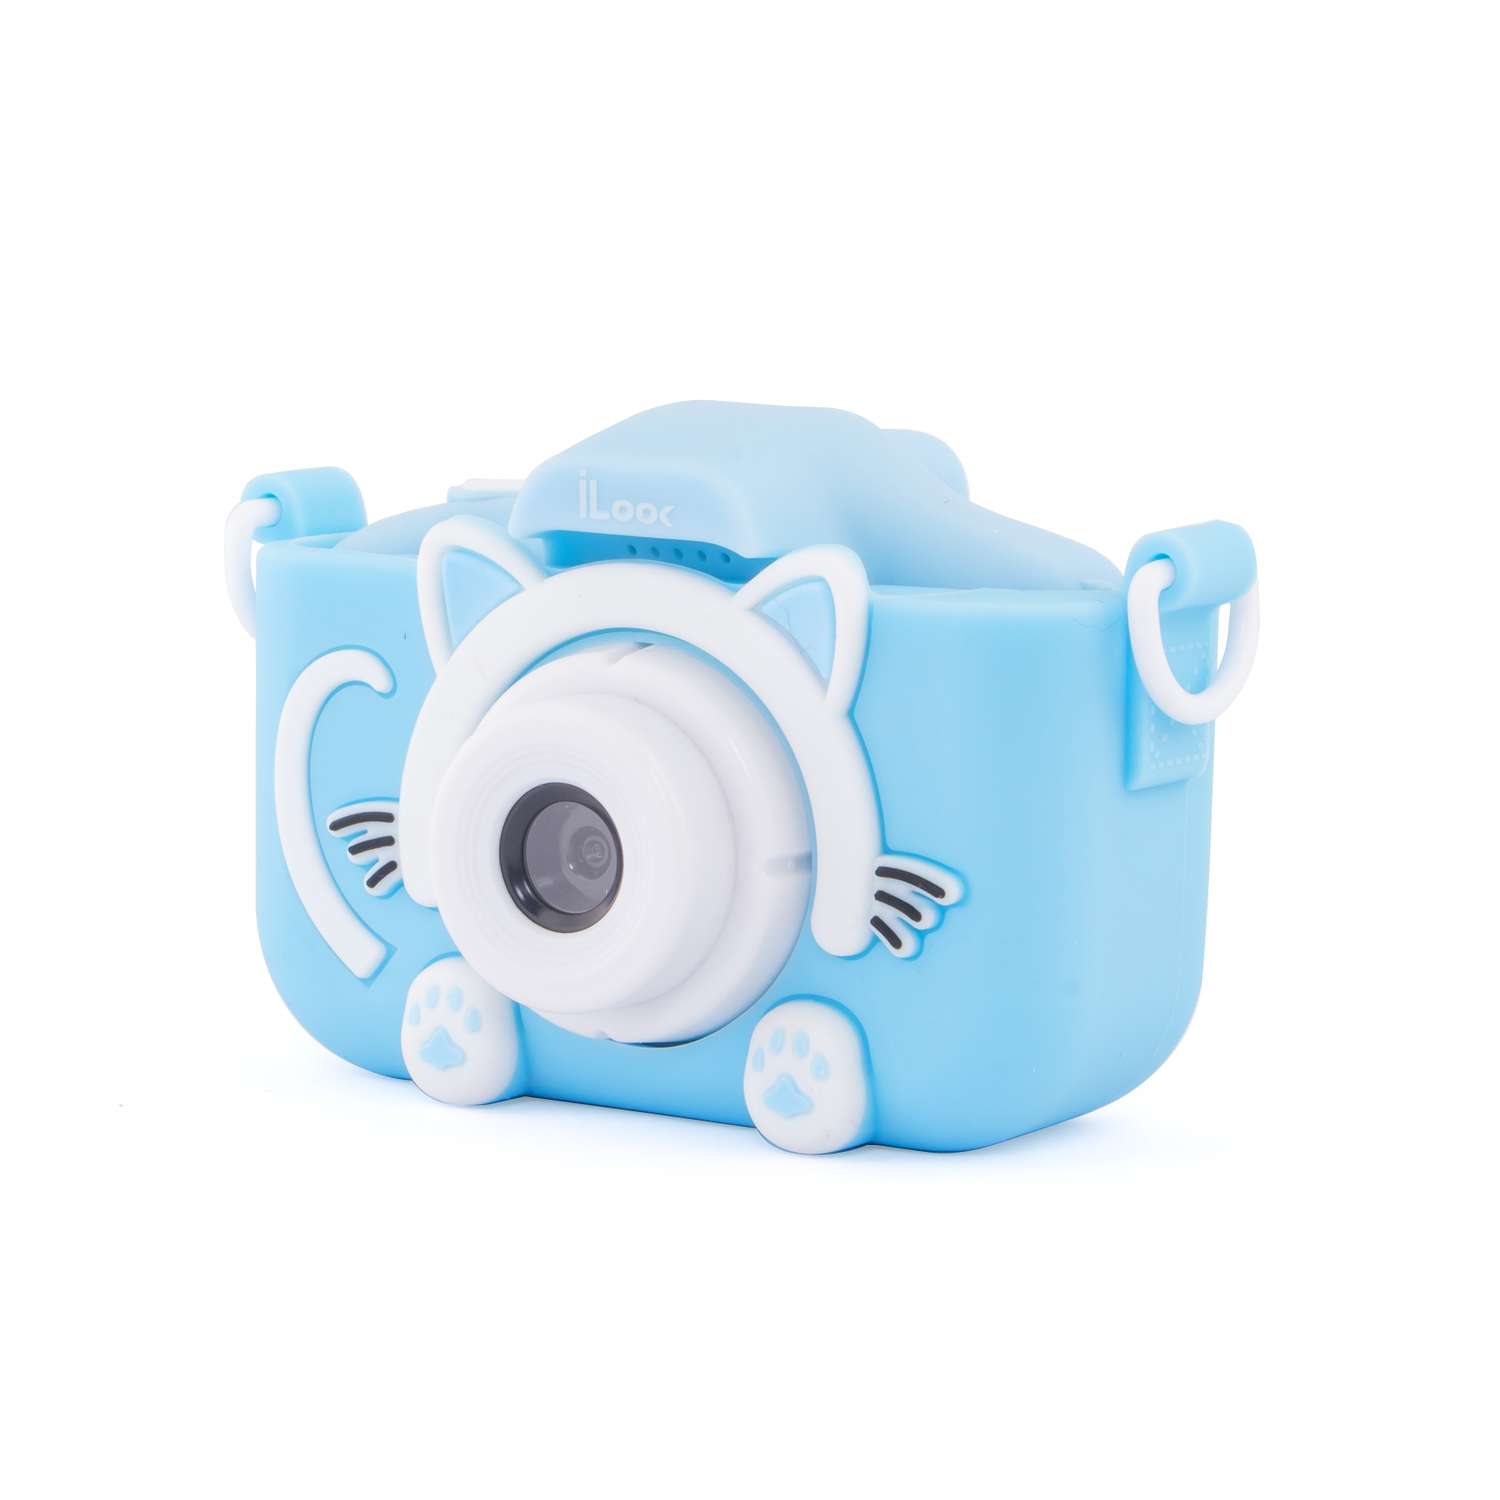 Камера цифровая Rekam iLook K390i (Blue) - фото 2